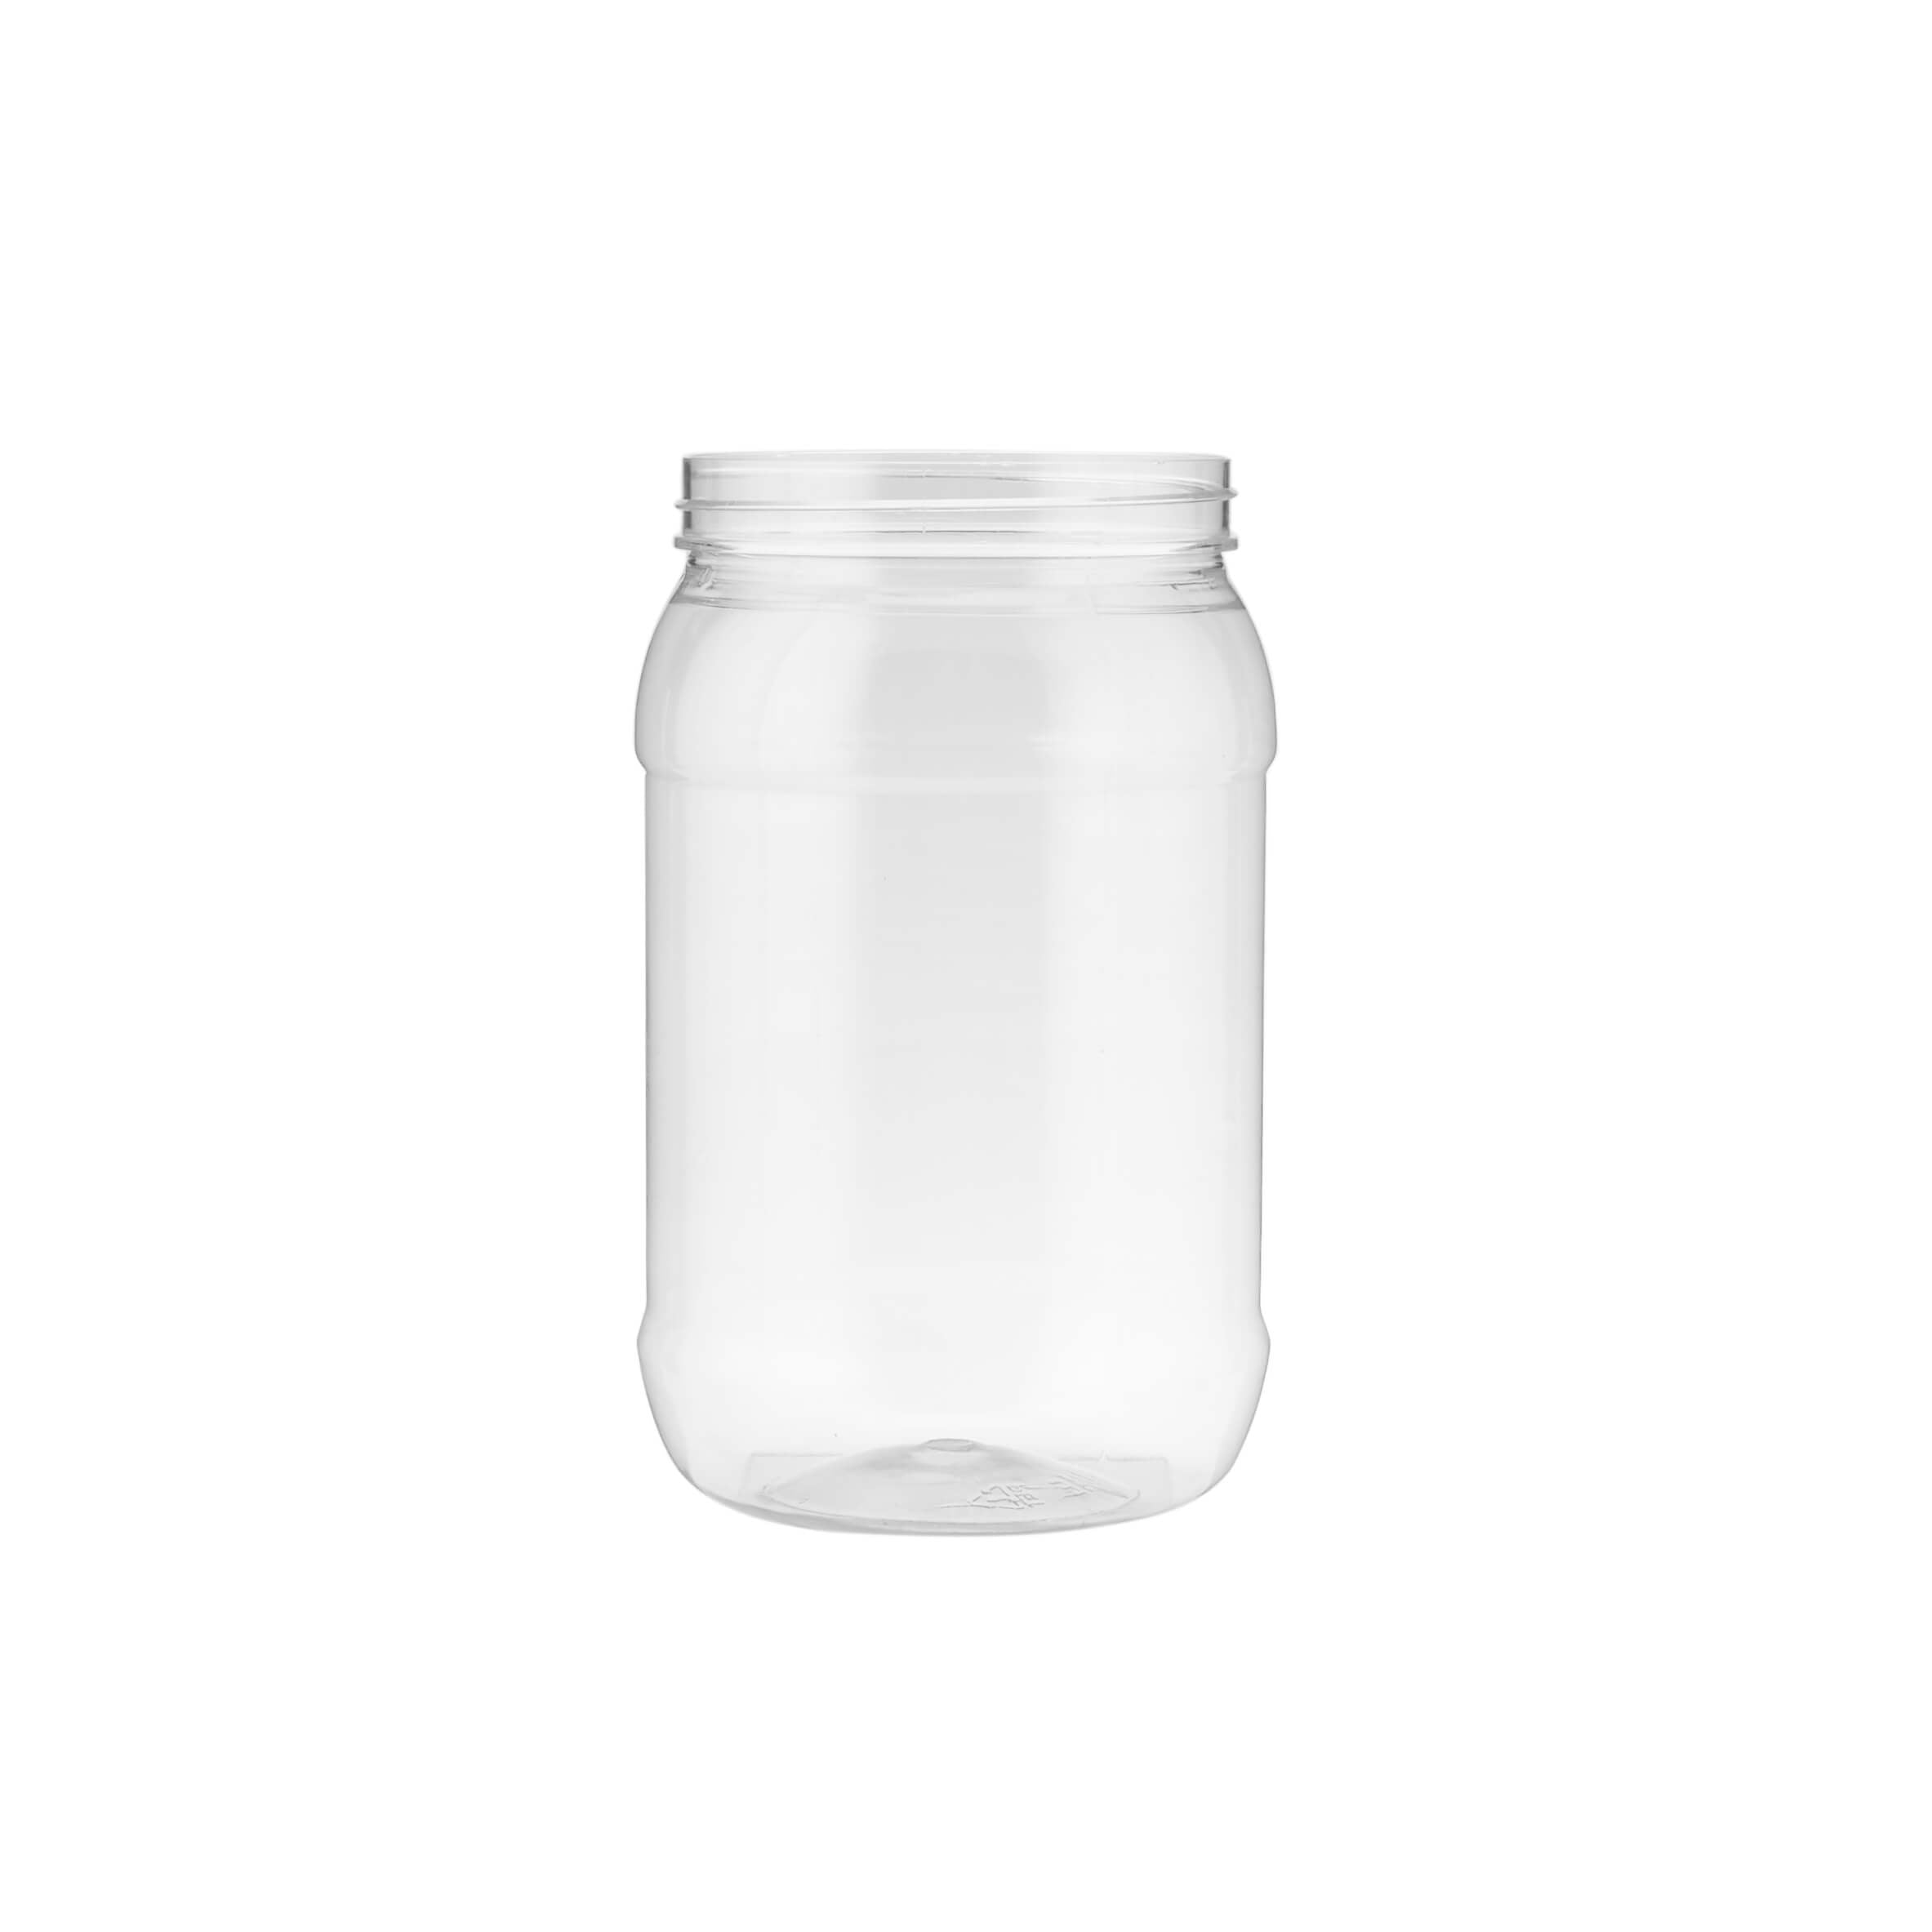 1500 ml Plastic Storage Jar With Lid - Hotpack Global